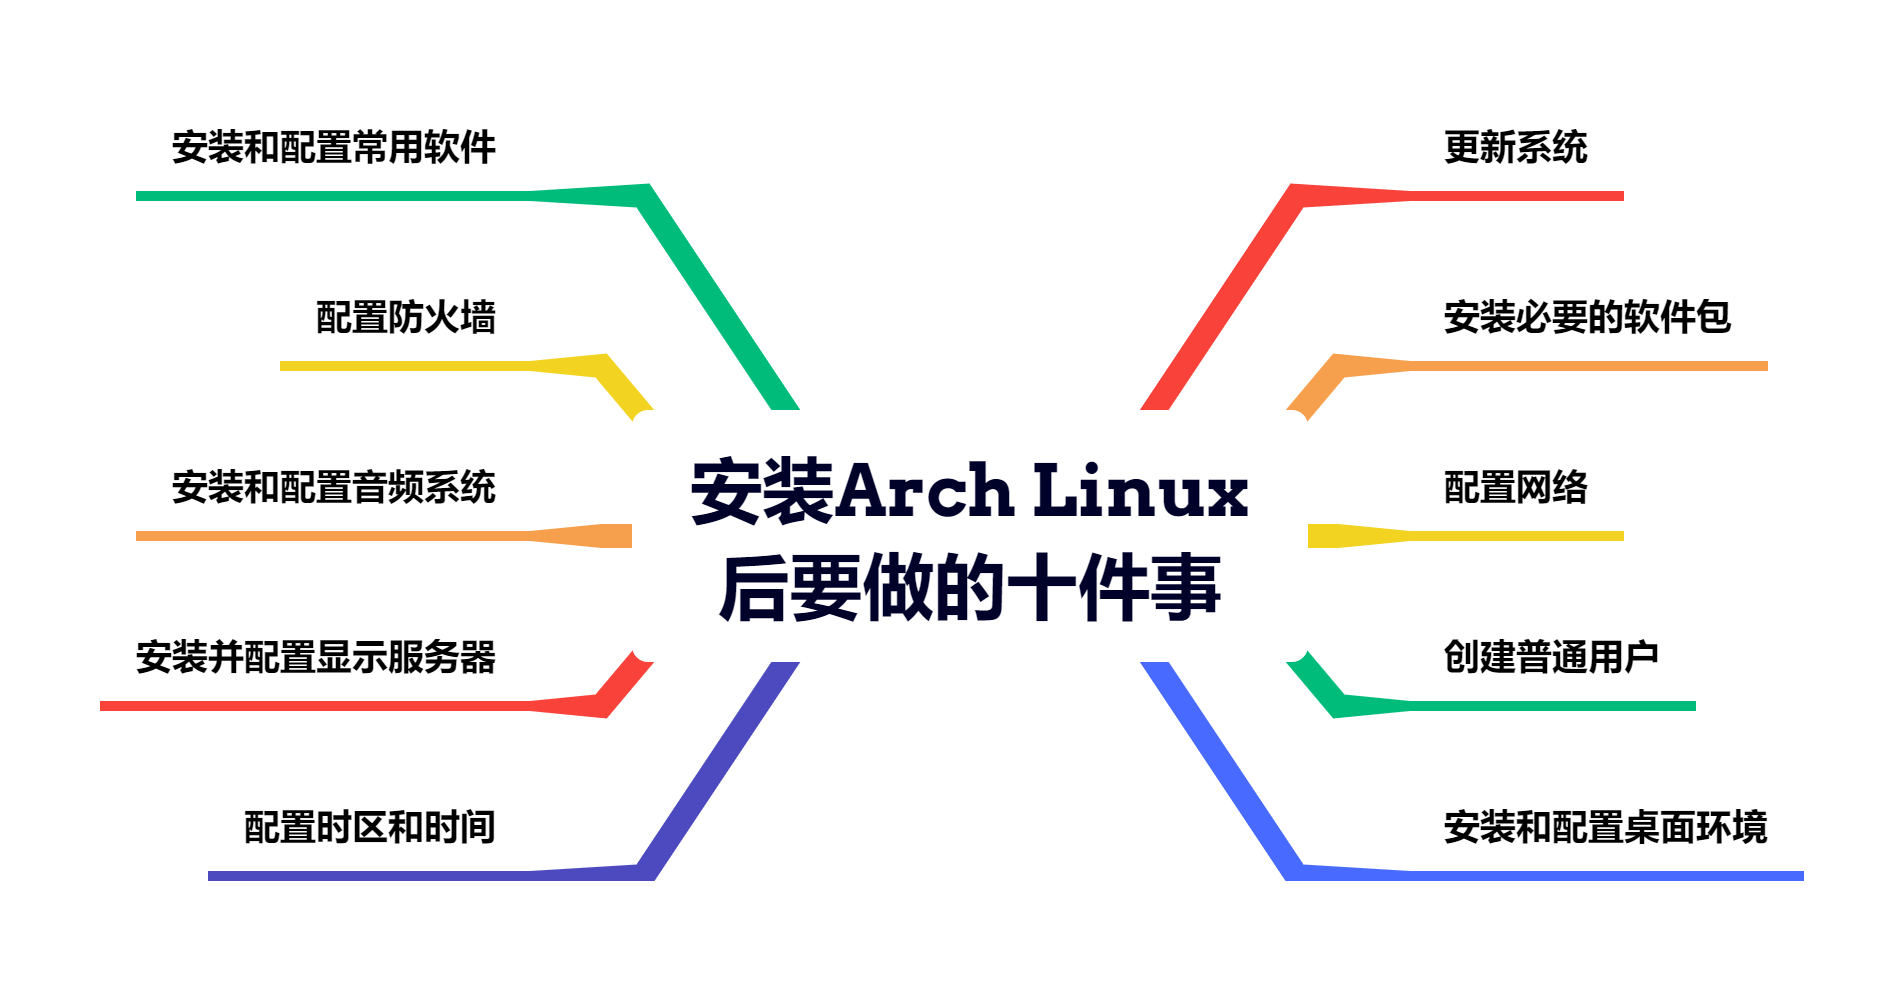 安装Arch Linux后要做的十件事